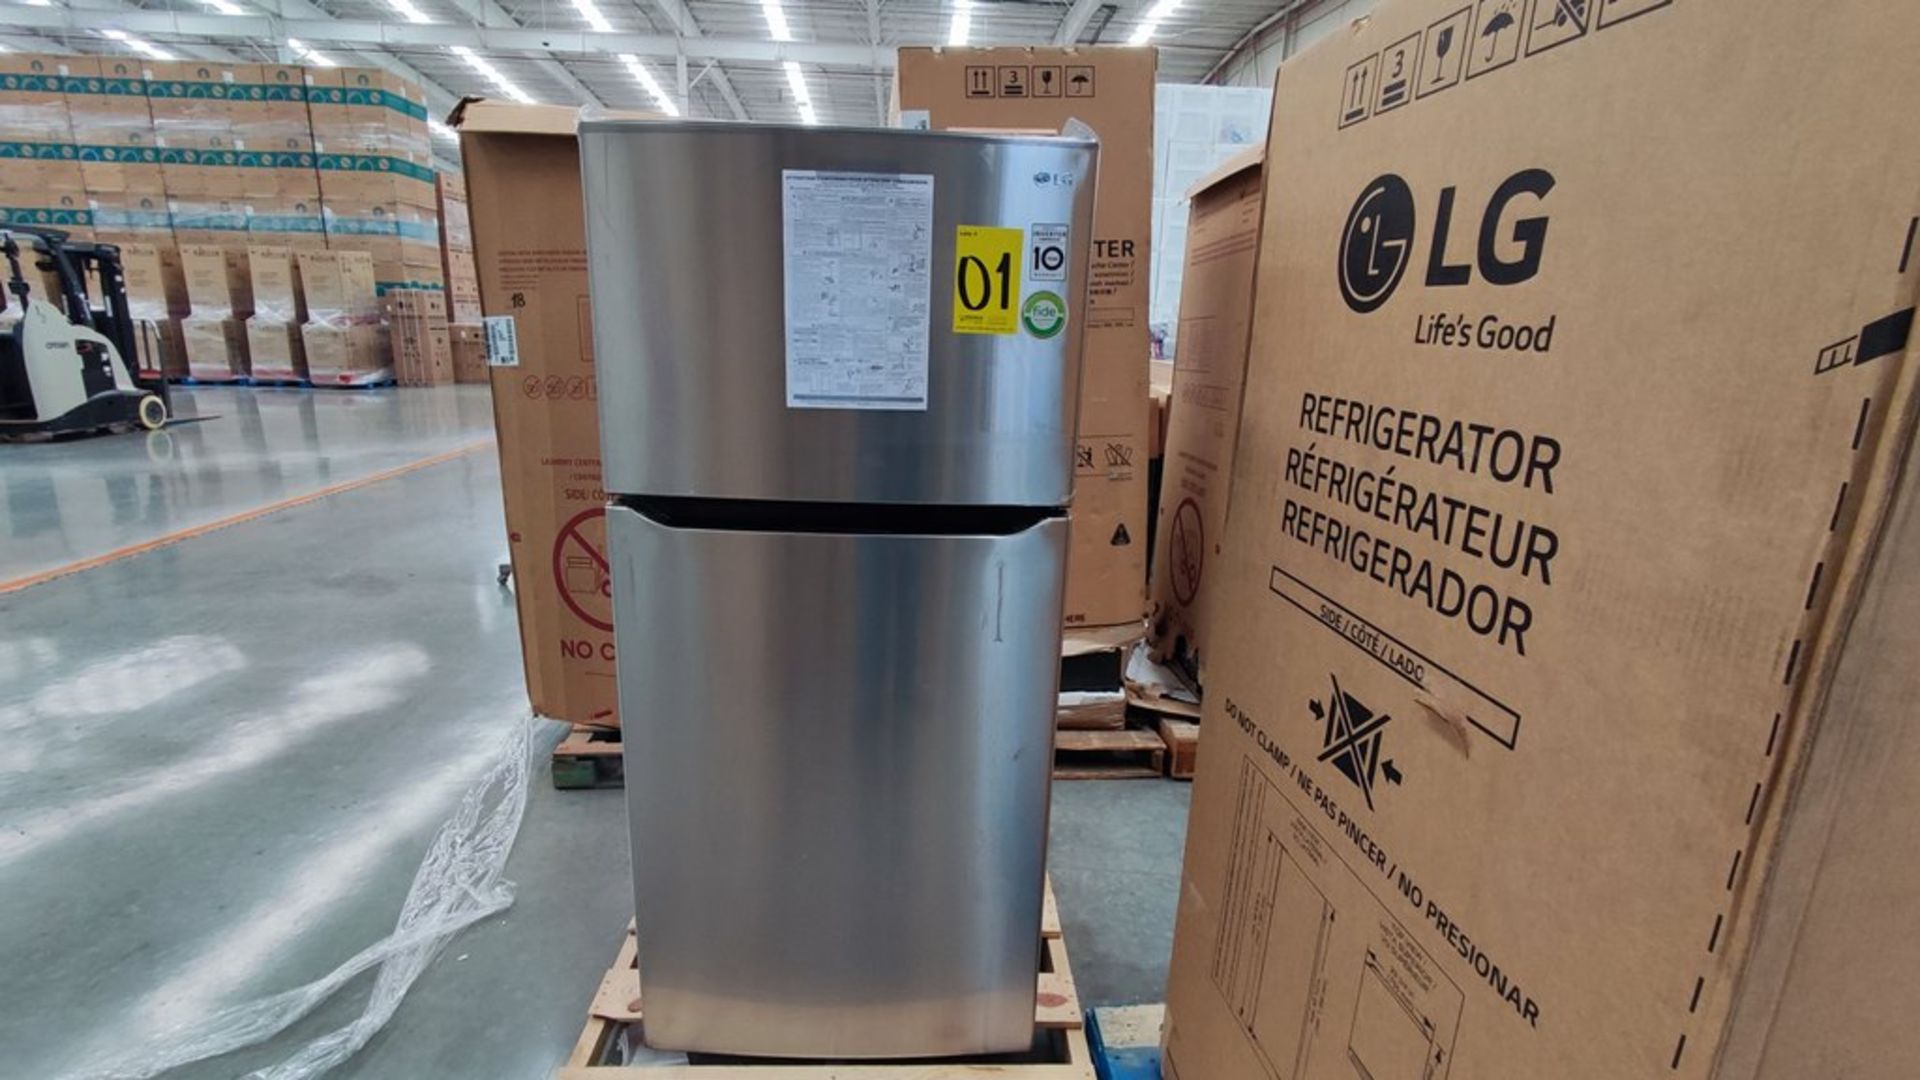 1 Refrigerador Marca LG, Modelo LT57BPSX, Serie 111MRVY3TY614, Color Gris, Favor de inspeccionar. ( - Image 2 of 11